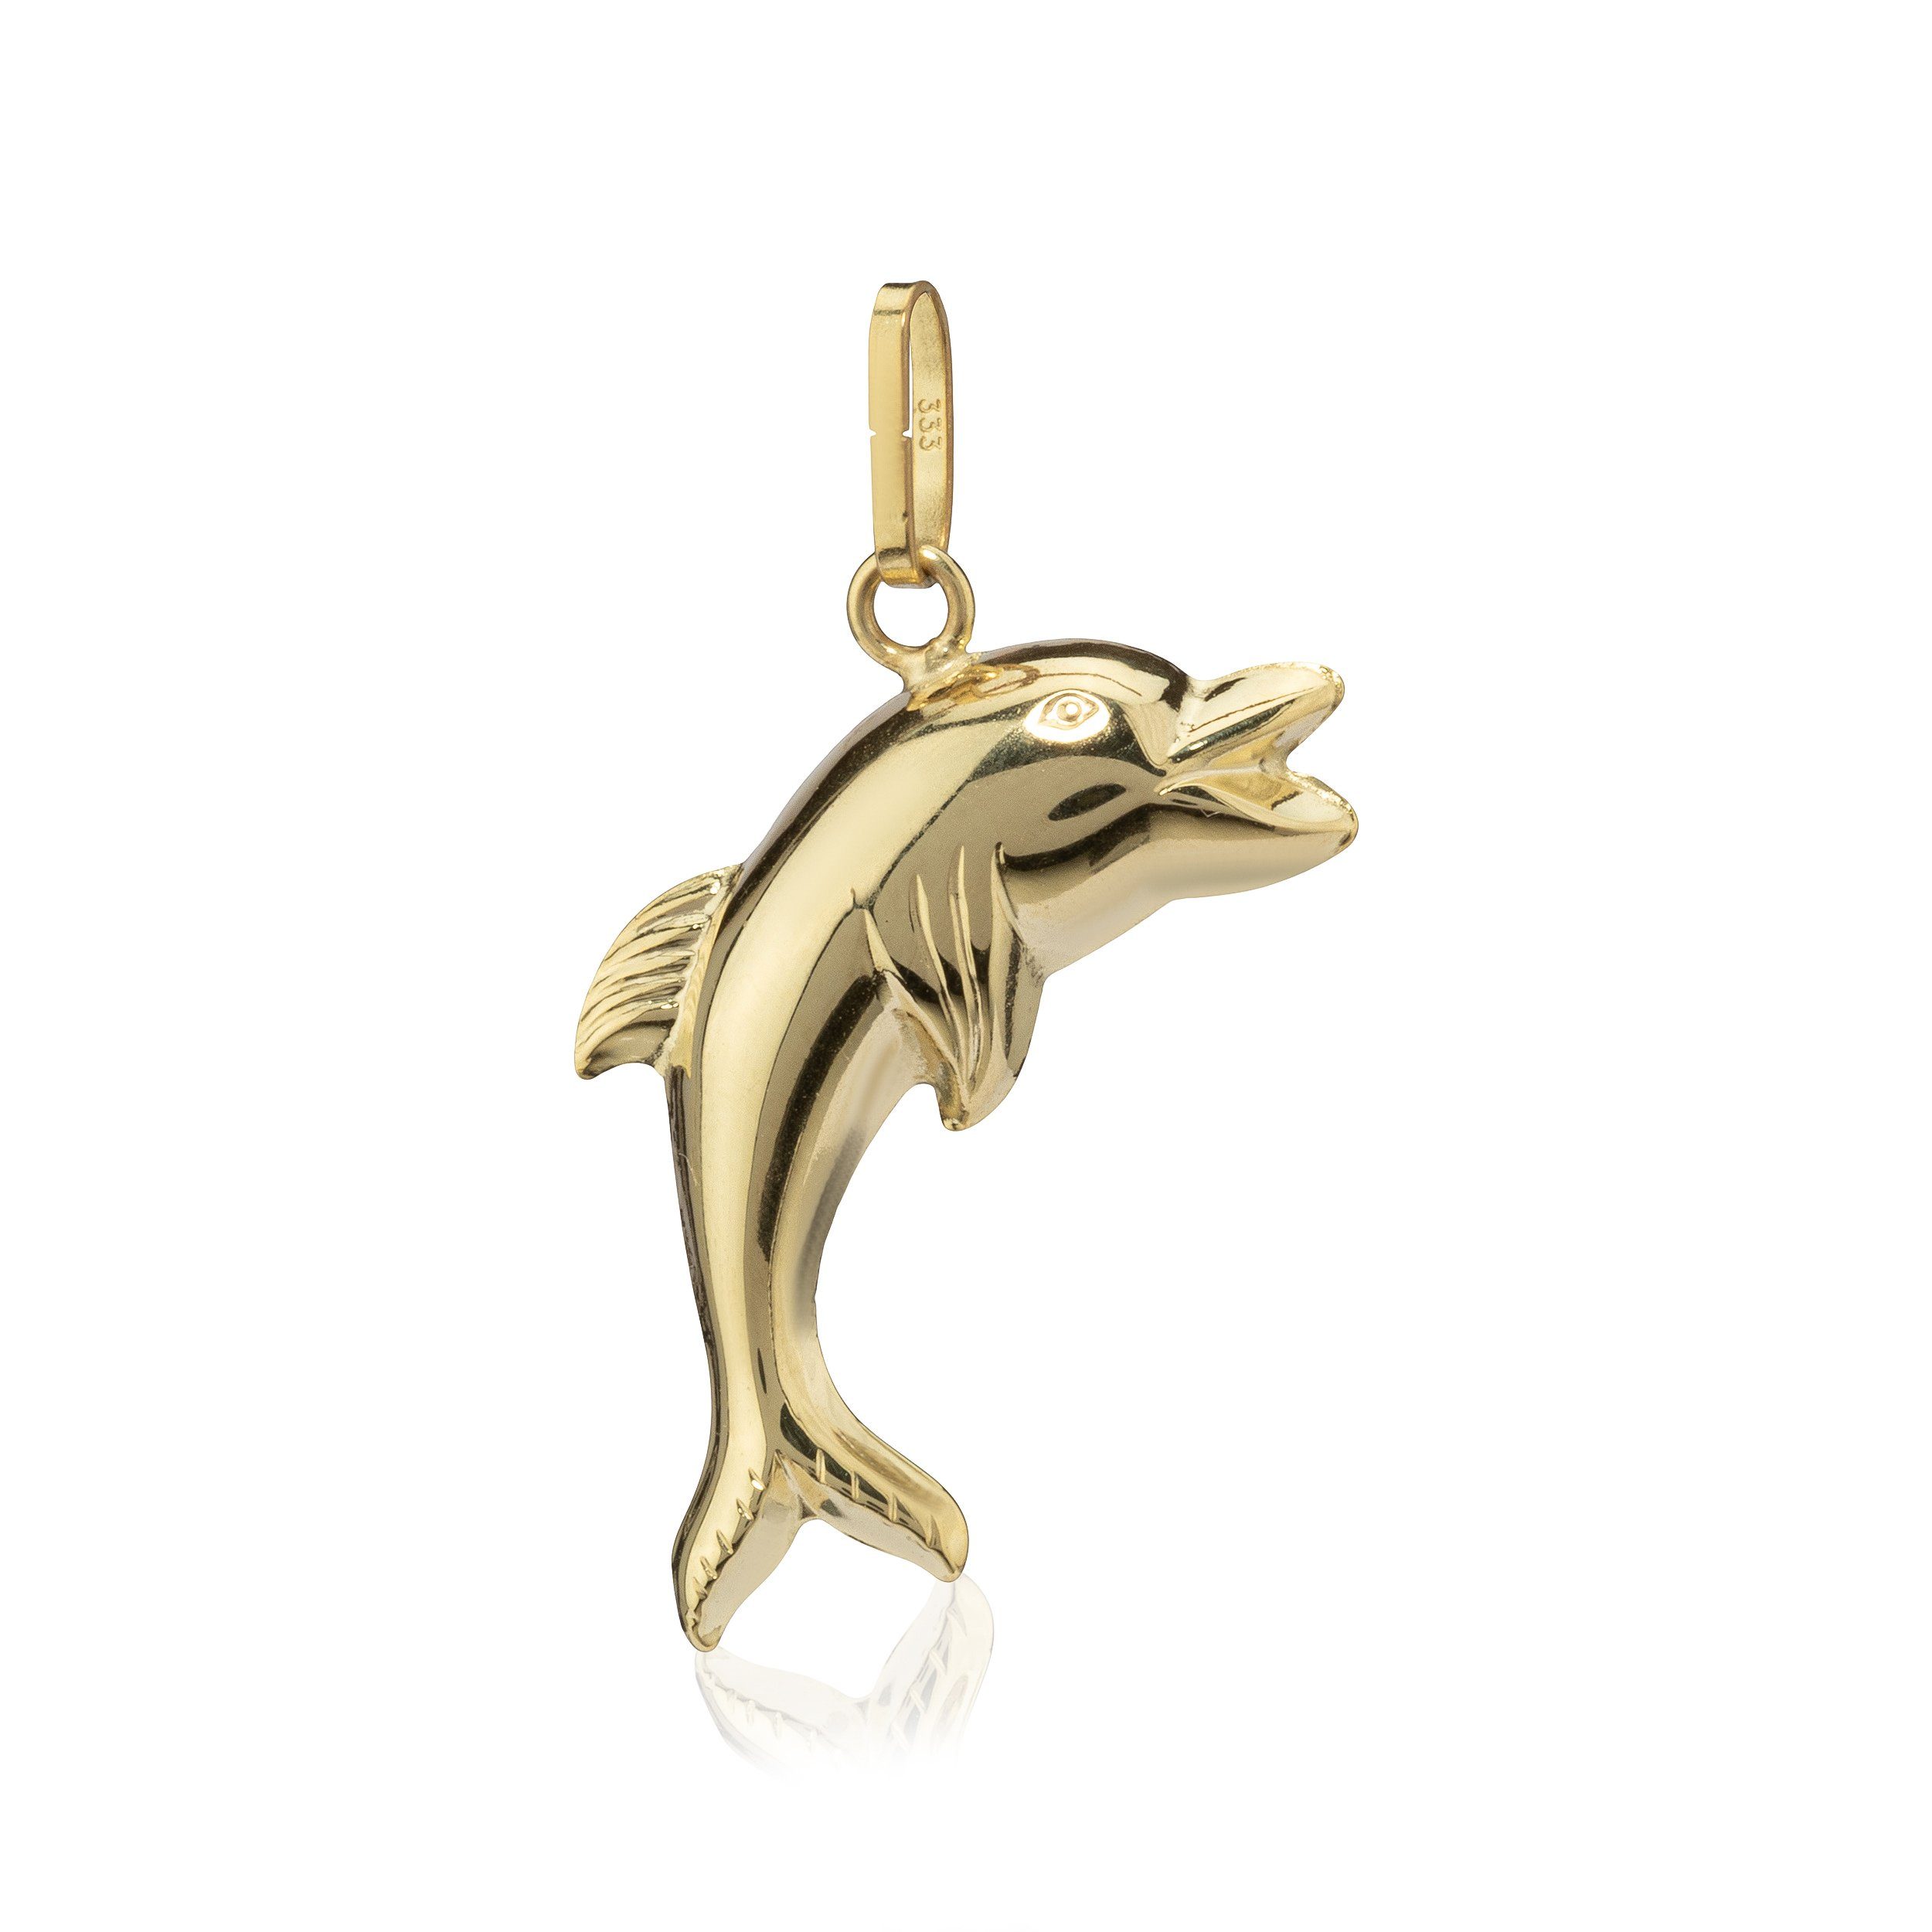 NKlaus Kettenanhänger Beidseitig Delfin Kettenanhänger 333 Gelb Gold 8 K